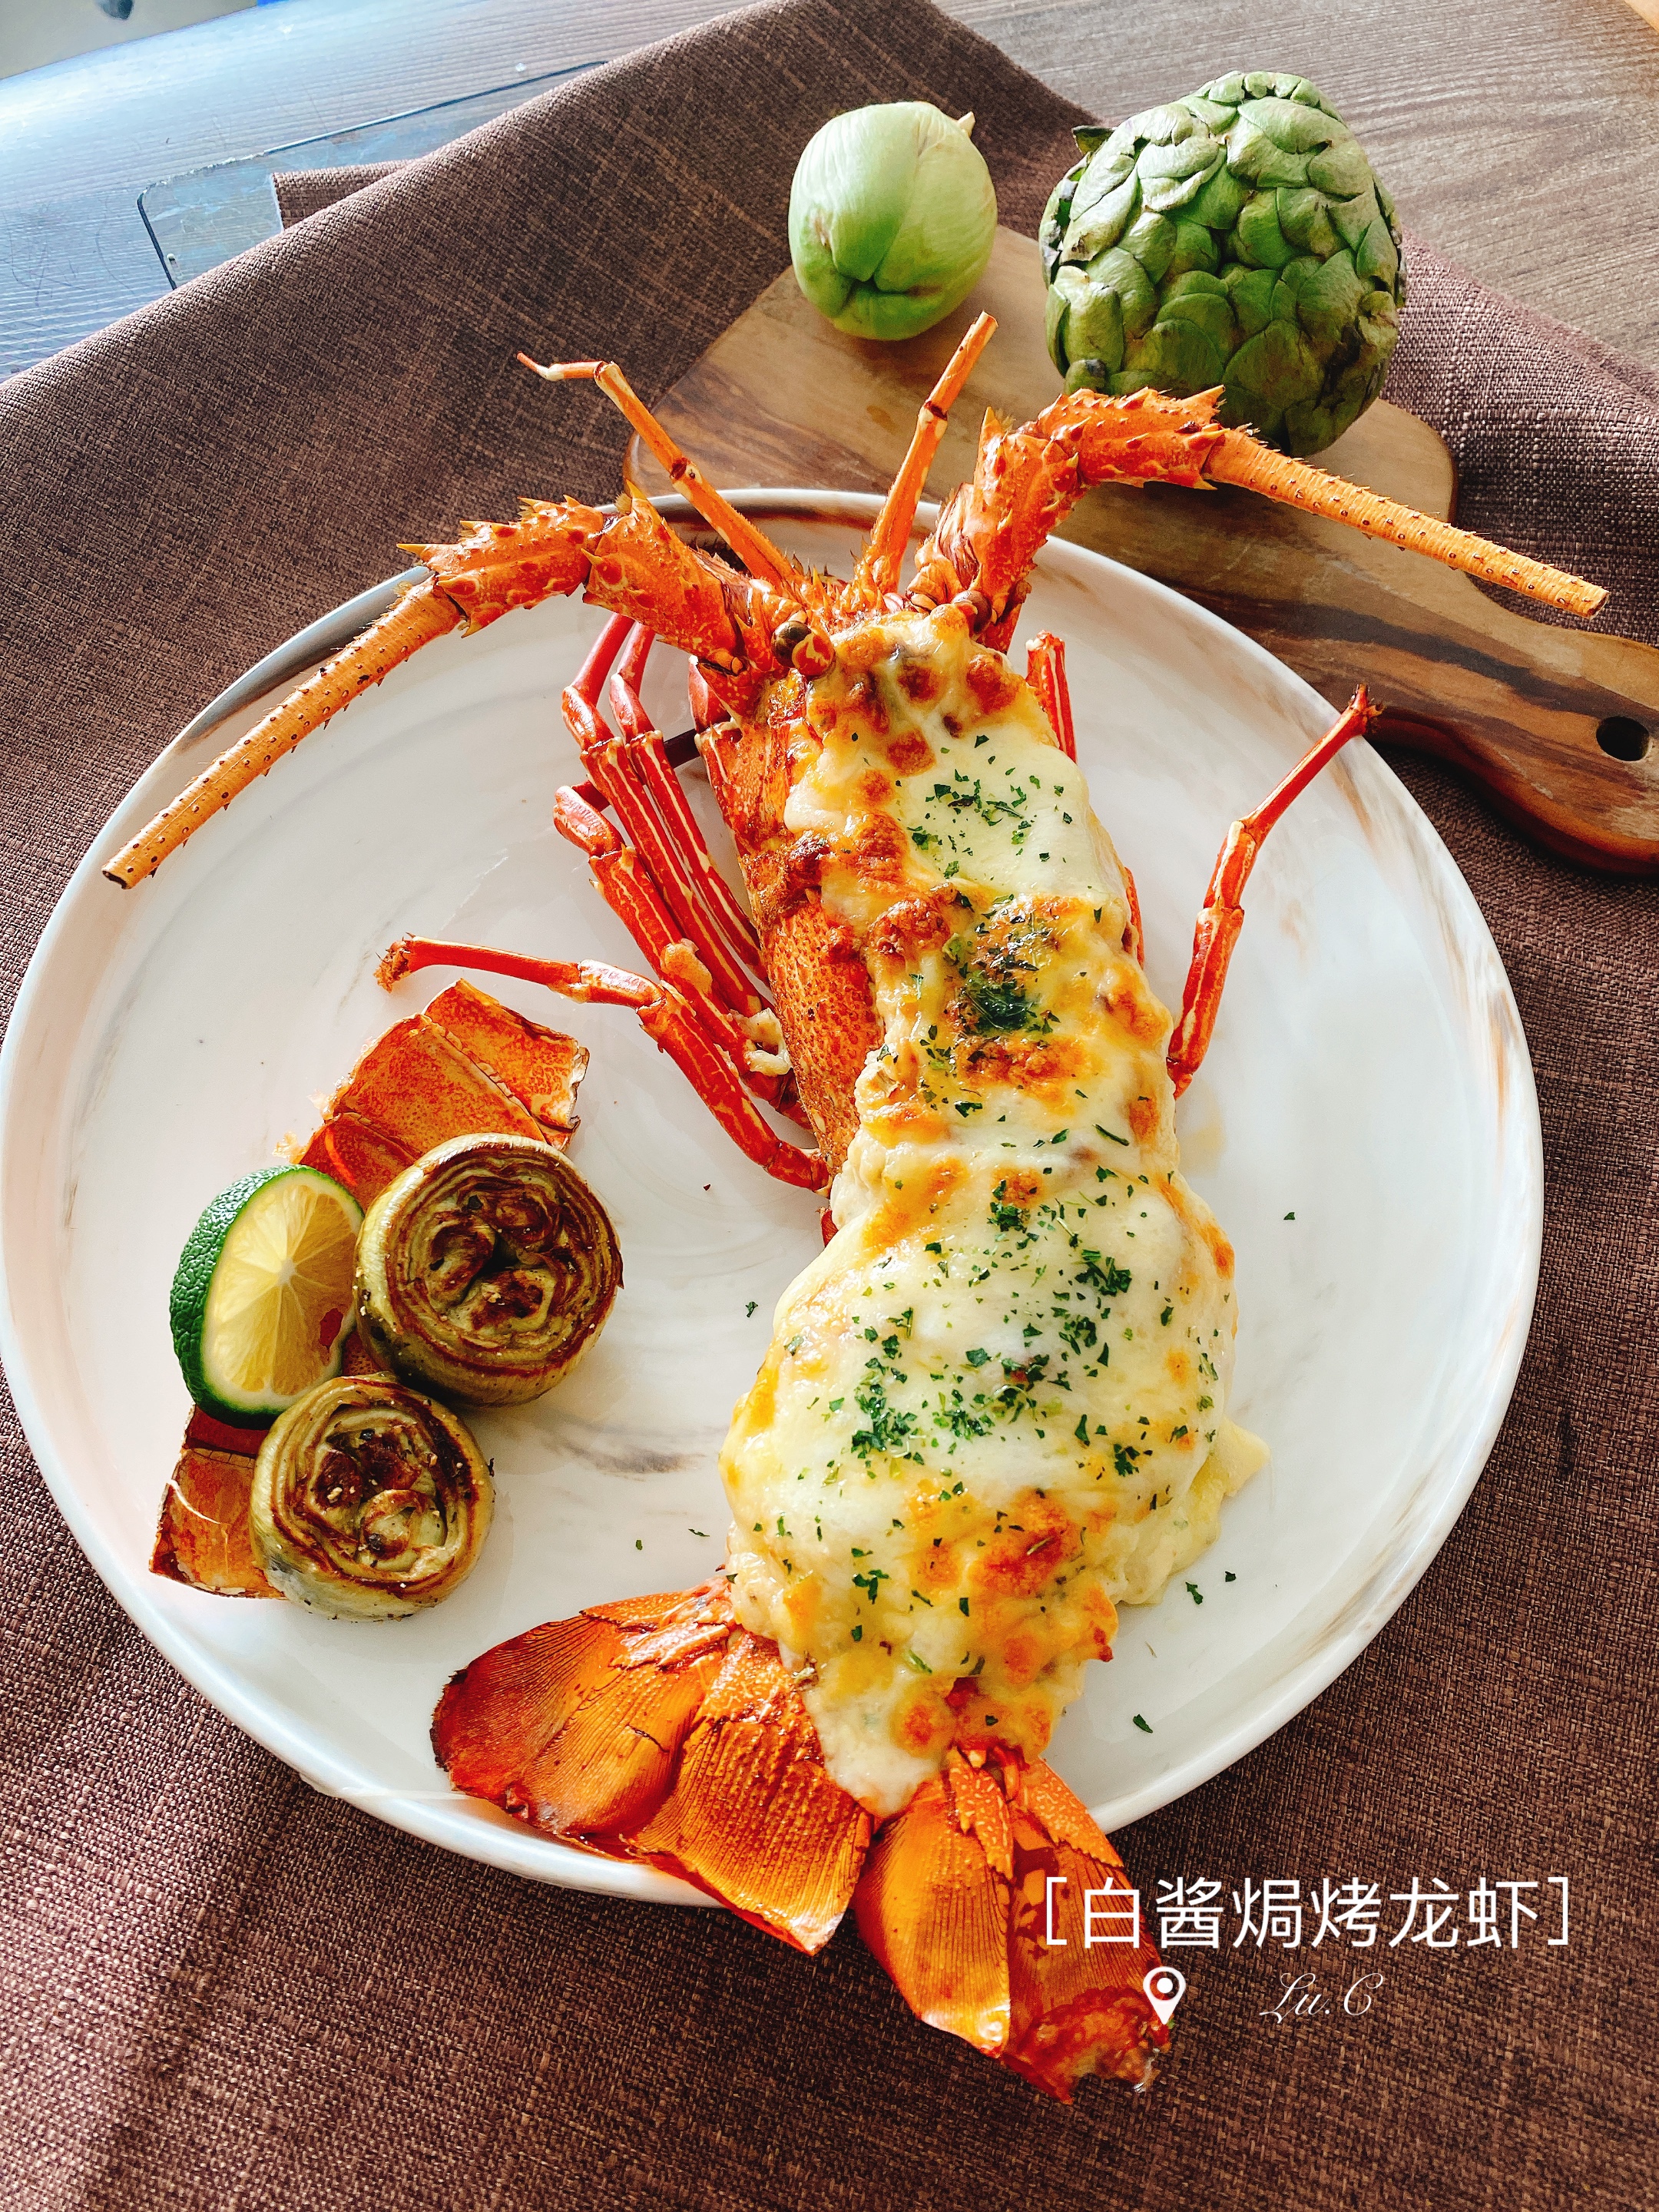 🦞《龙虾、野生青龙料理》🦞芝士白酱焗烤龙虾🧀芝士好好味😋简单好上手的烤箱菜🤙🏻